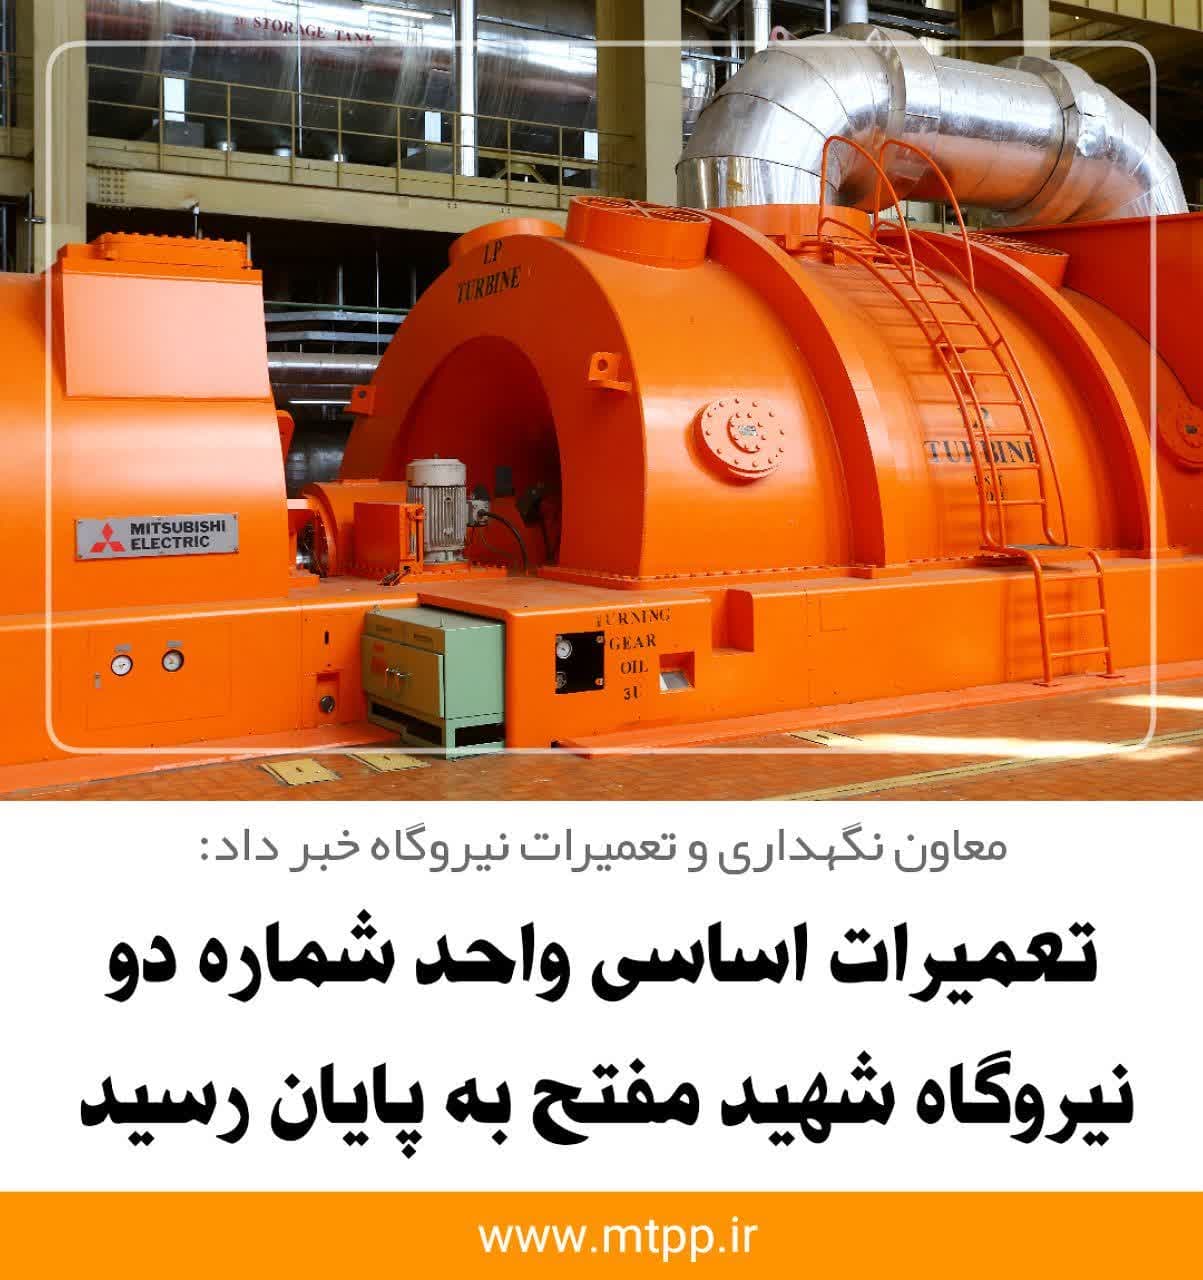 تعمیرات اساسی واحد شماره ۲ نیروگاه شهید مفتح به پایان رسید